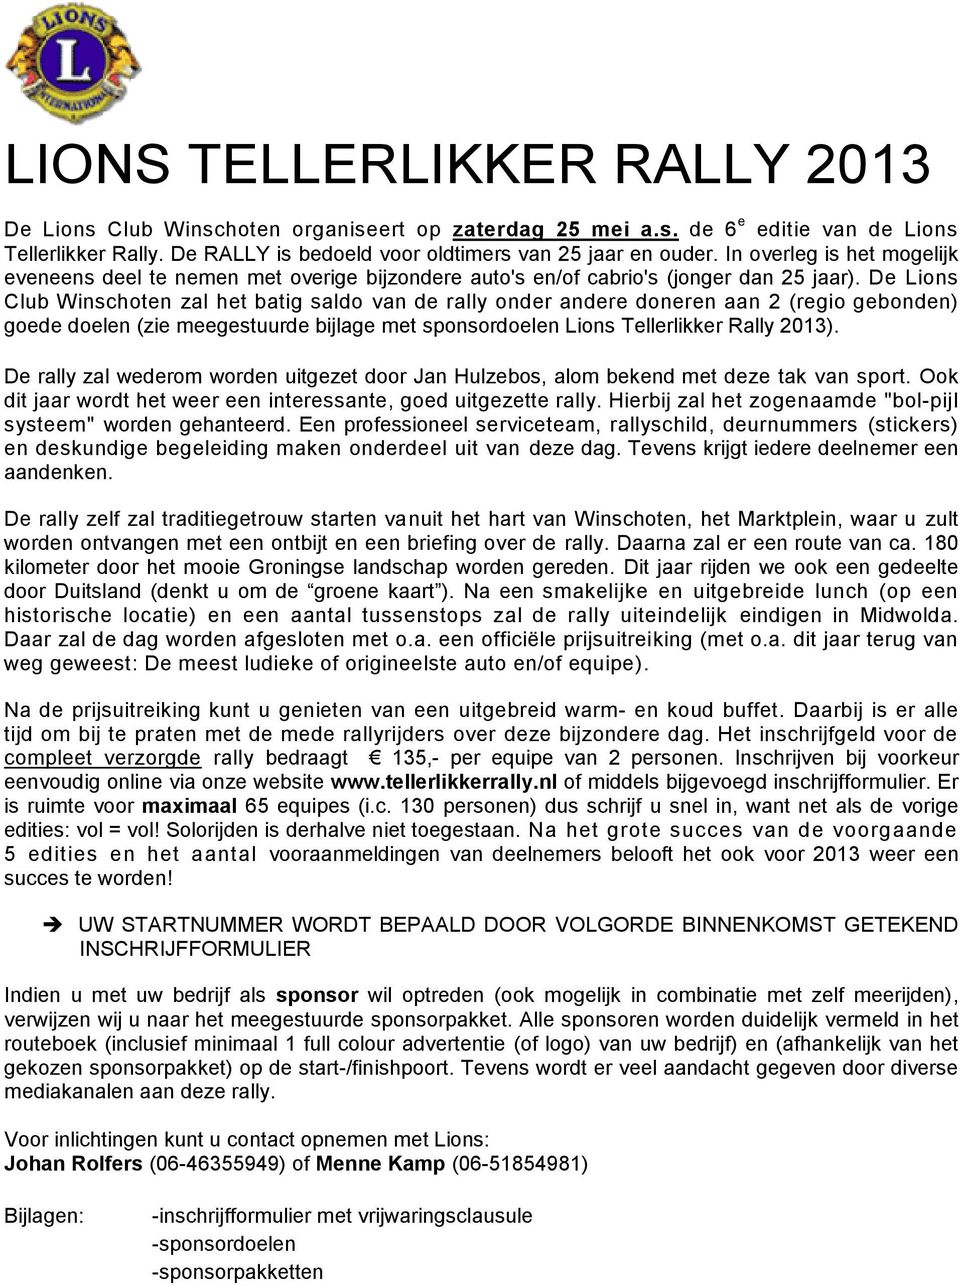 De Lions Club Winschoten zal het batig saldo van de rally onder andere doneren aan 2 (regio gebonden) goede doelen (zie meegestuurde bijlage met sponsordoelen Lions Tellerlikker Rally 2013).